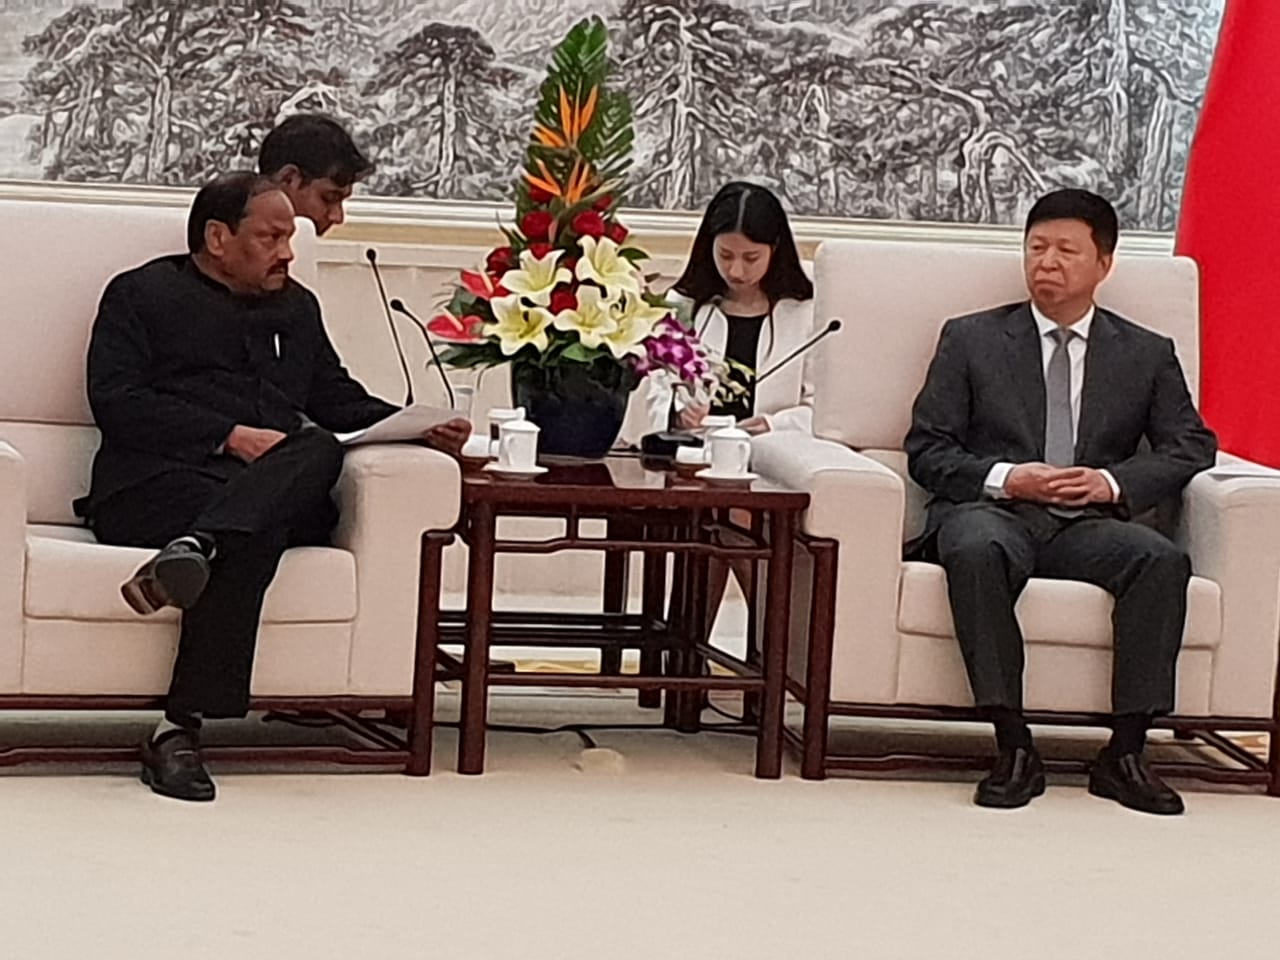 मुख्यमंत्री के नेतृत्व में चीन दौरा पर गए प्रतिनिधिमंडल की मिनिस्टर ऑफ इंटरनेशनल डिपार्टमेंट ऑफ कम्युनिस्ट पार्टी ऑफ चाइना के साथ वार्ता हुई